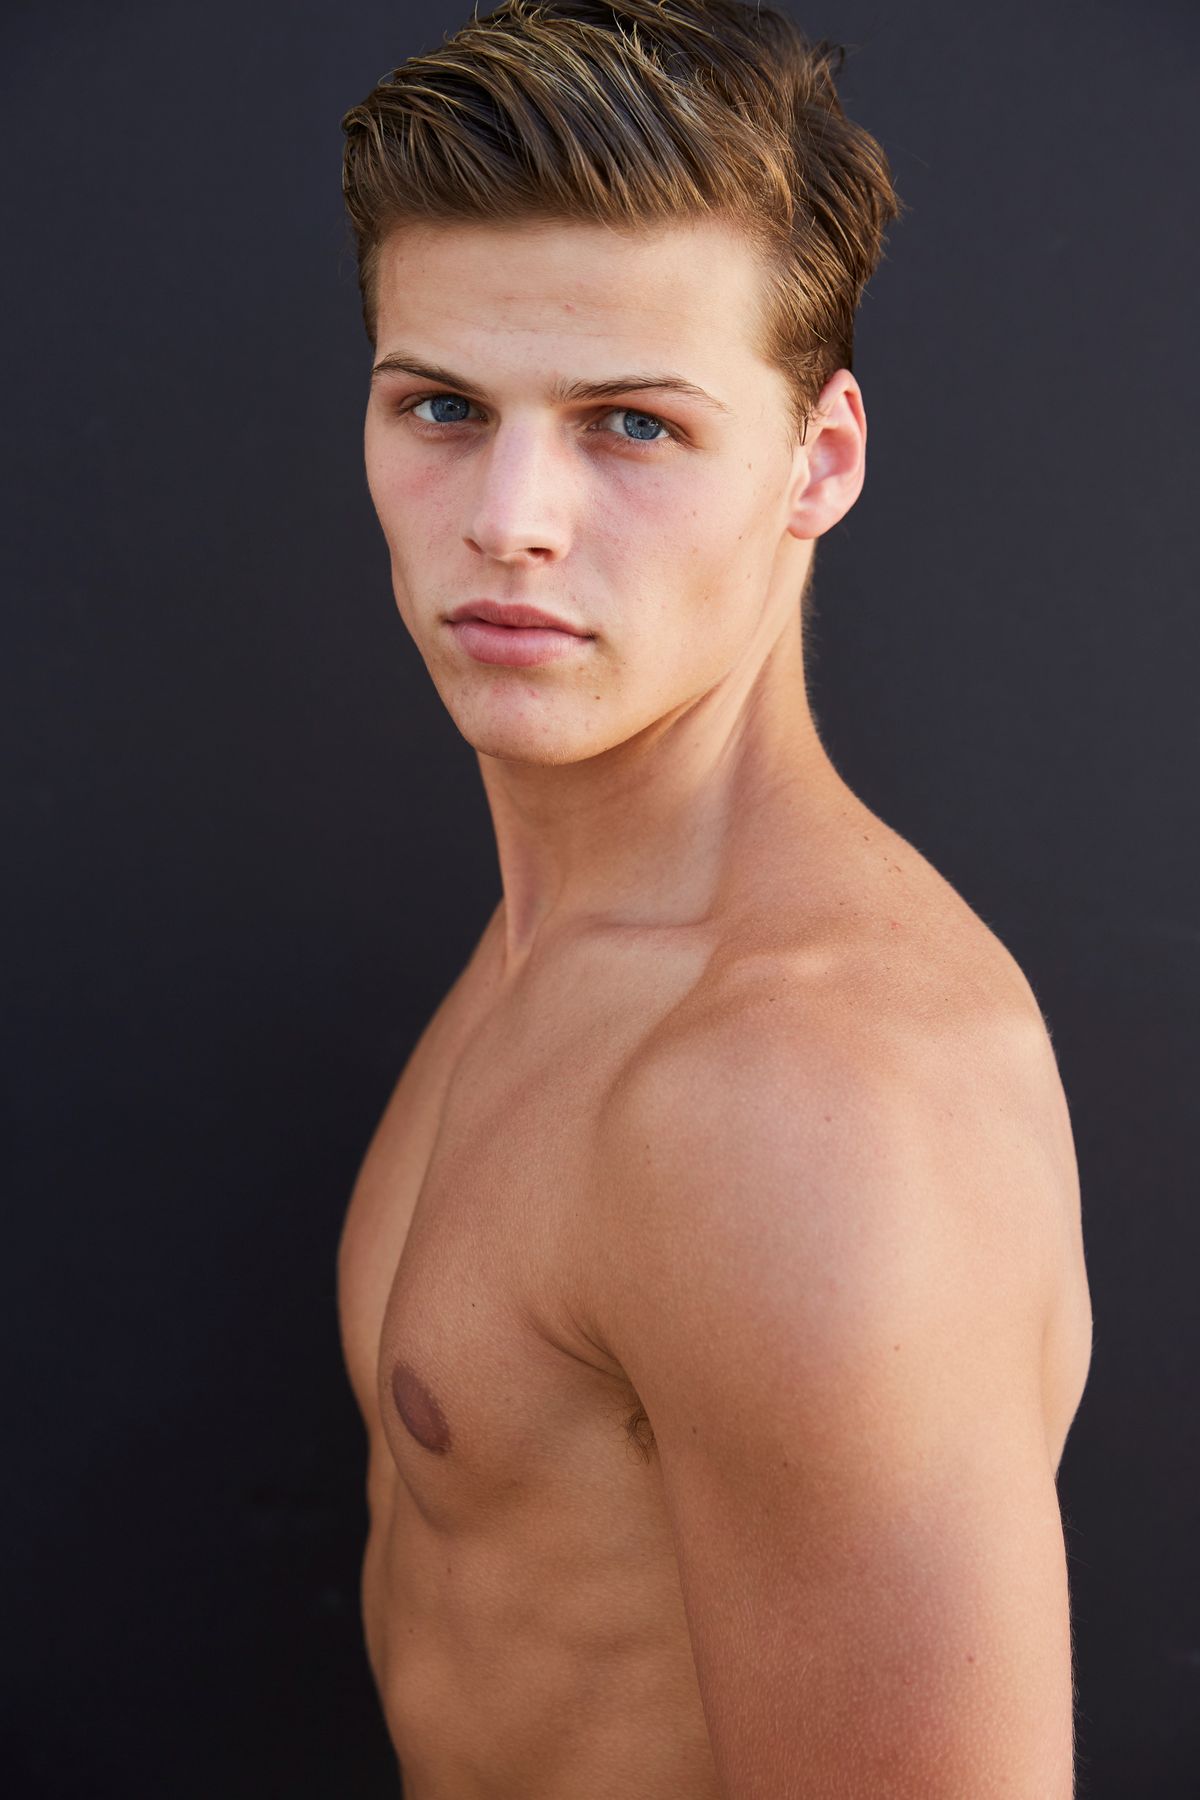 Model Sam Dezzani